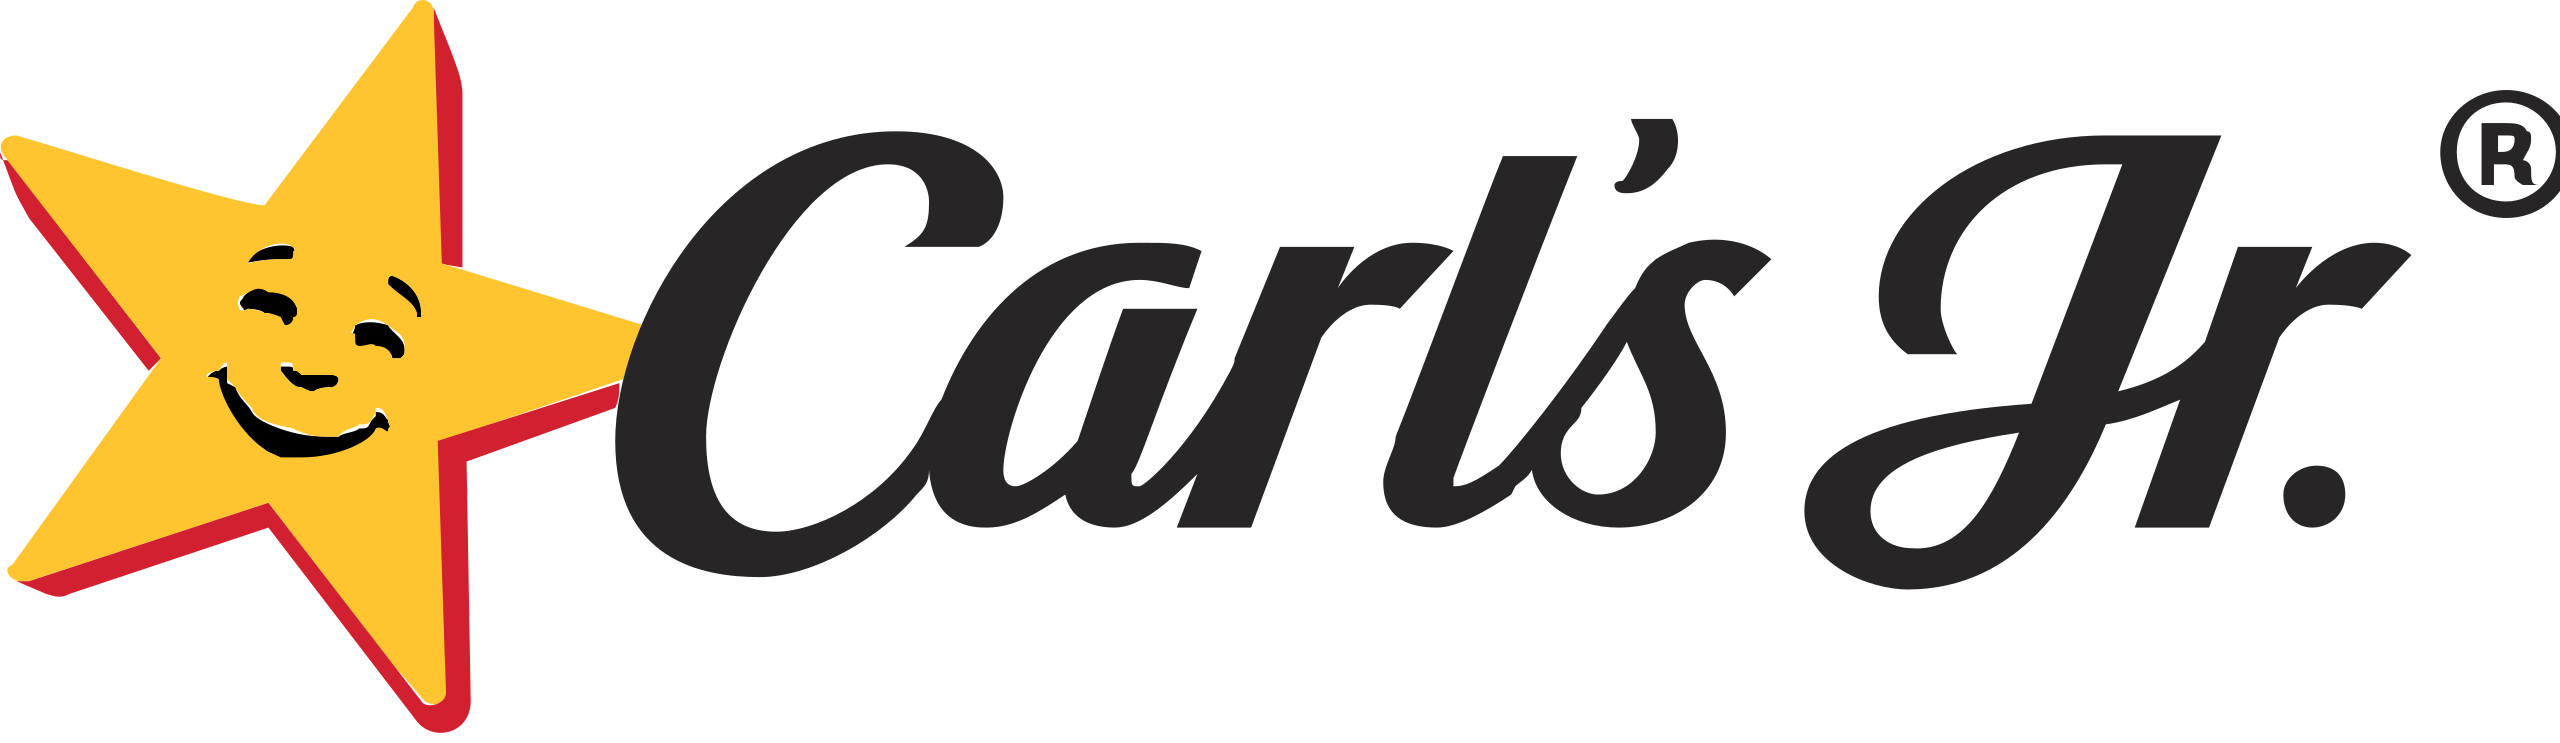 Carls_Jr_logo-svg%20(4).png